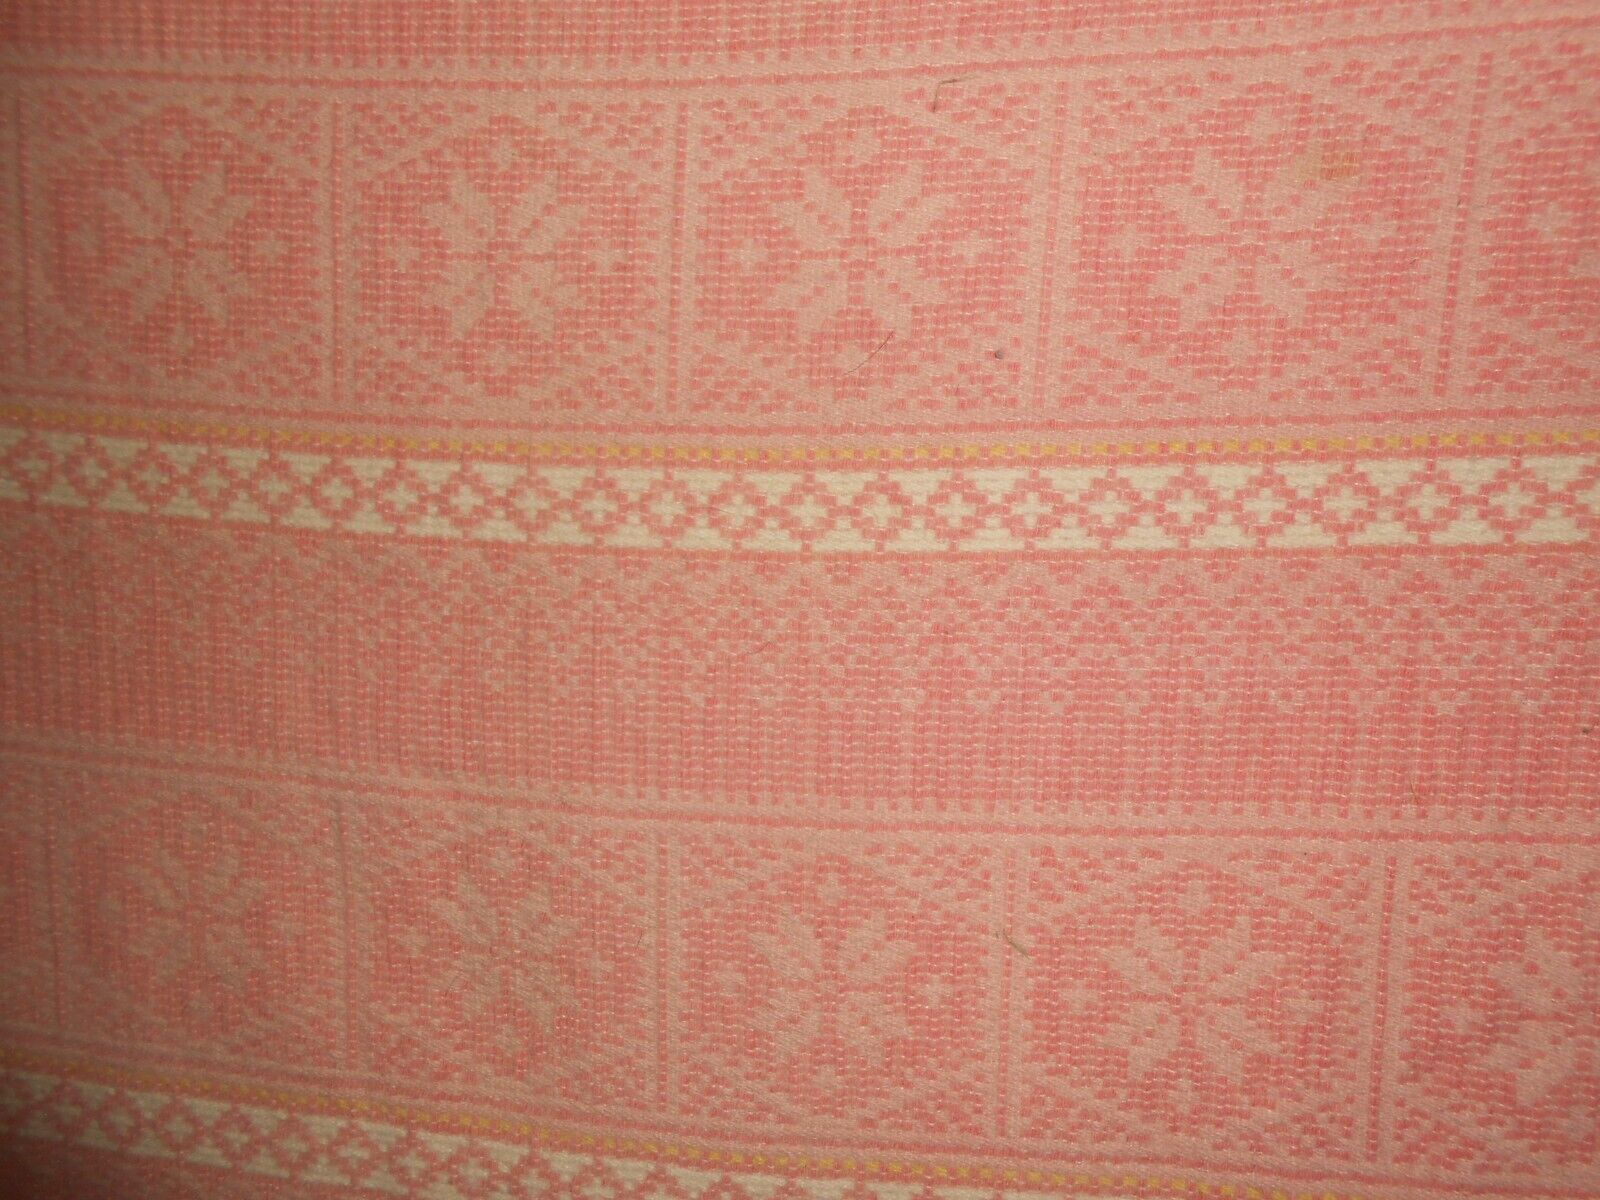 RARE Pink Flowers Snowflakes Vintage PEARCE Wool Plaid Blanket WOOLRICH 68x58